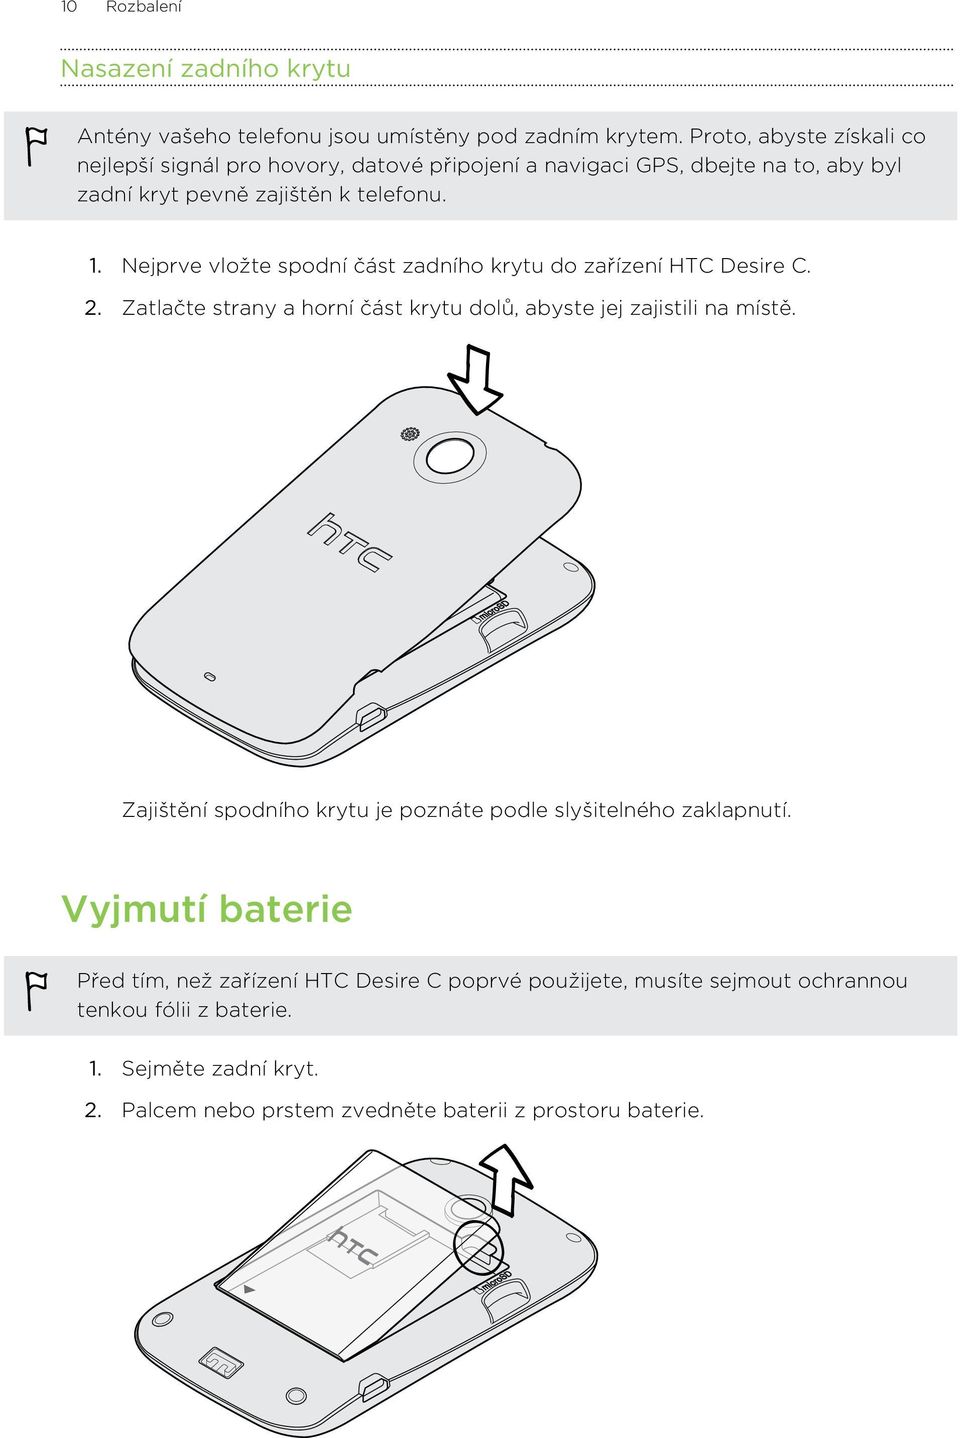 Nejprve vložte spodní část zadního krytu do zařízení HTC Desire C. 2. Zatlačte strany a horní část krytu dolů, abyste jej zajistili na místě.